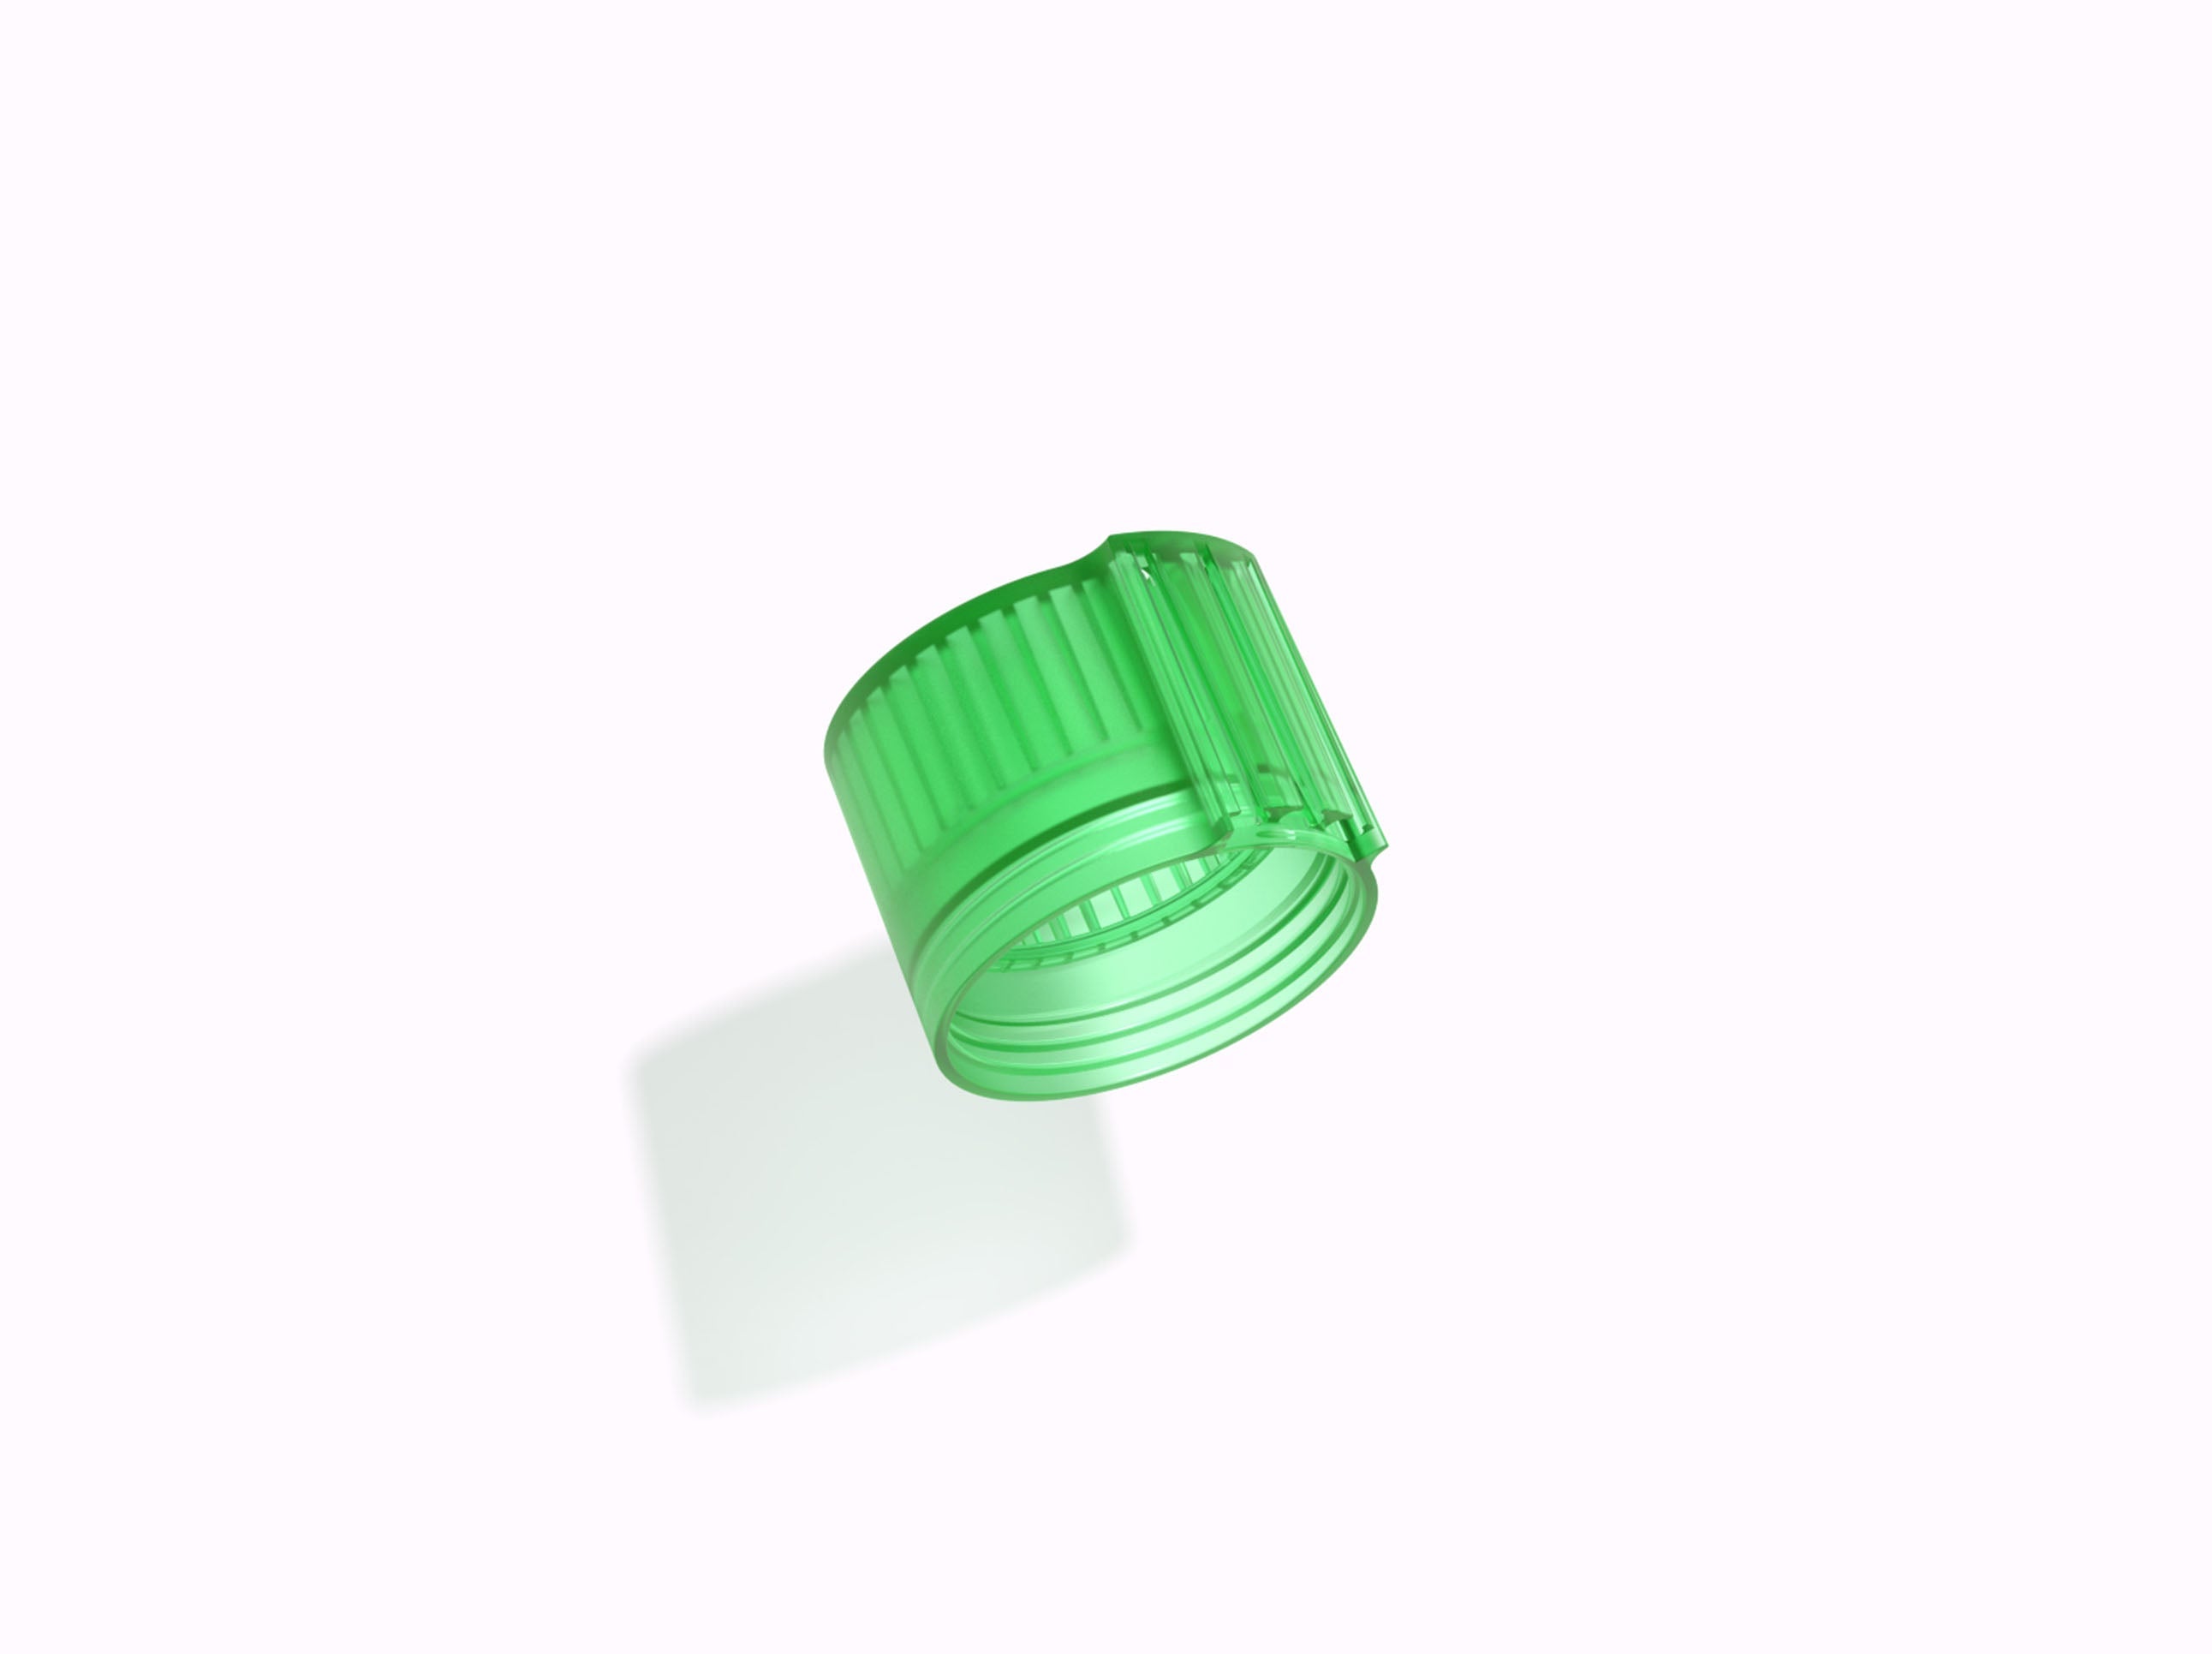 Air Up Drinking bottle starter kit - Vibrant Green - Comprenant 3 dosettes  - starter